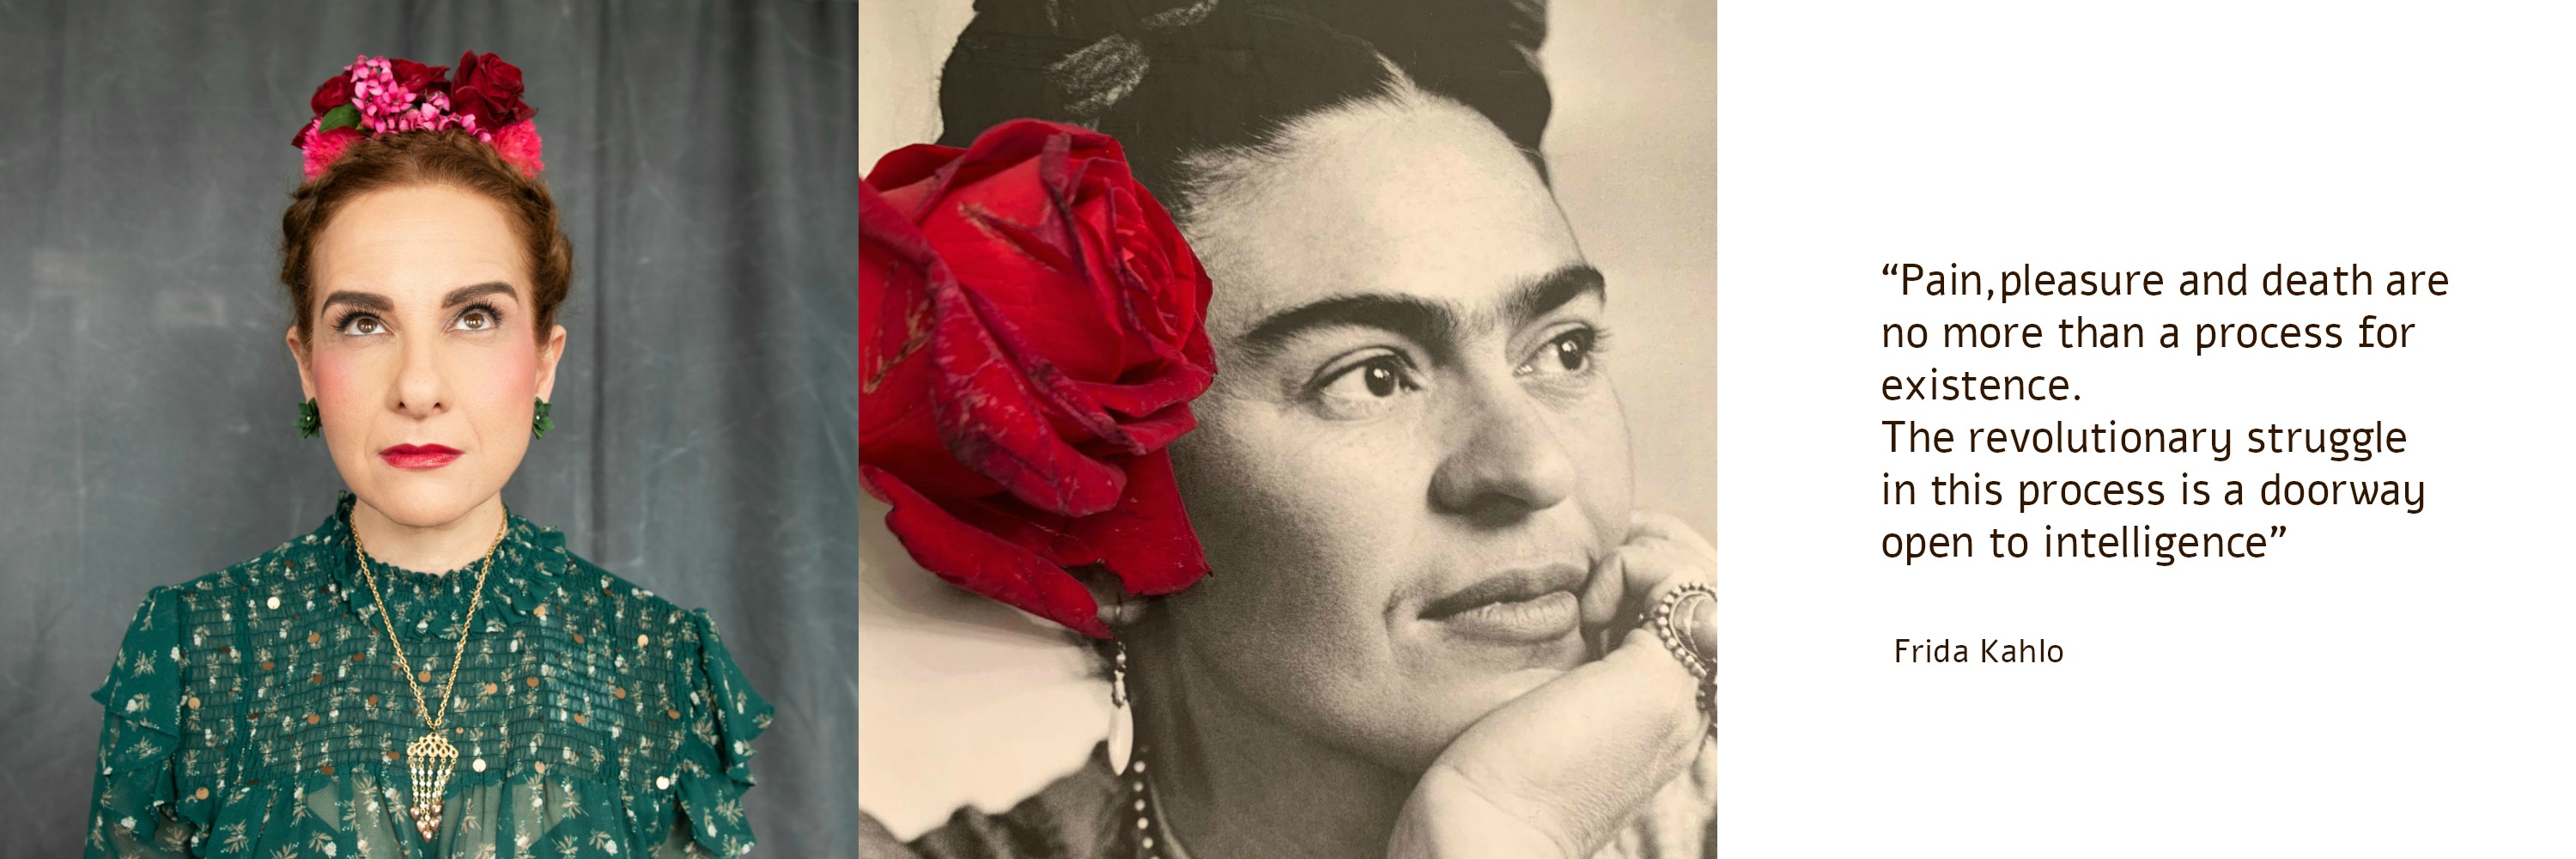 תמרי סלונים ליבס מתוך הבלוג https://tamariandme.com/ בפוסט: עיגולים של שמחה עיגולים של כאב בהשארת הציירת פרידה קאלו Frida kahlo. צילום עידו לביא (מלבד התמונה של פרידה מהספר Frida Kahlo at home), סטיילינג הילה חילו עמרני, שיער רביד פלג, איפור מילי מזרחי